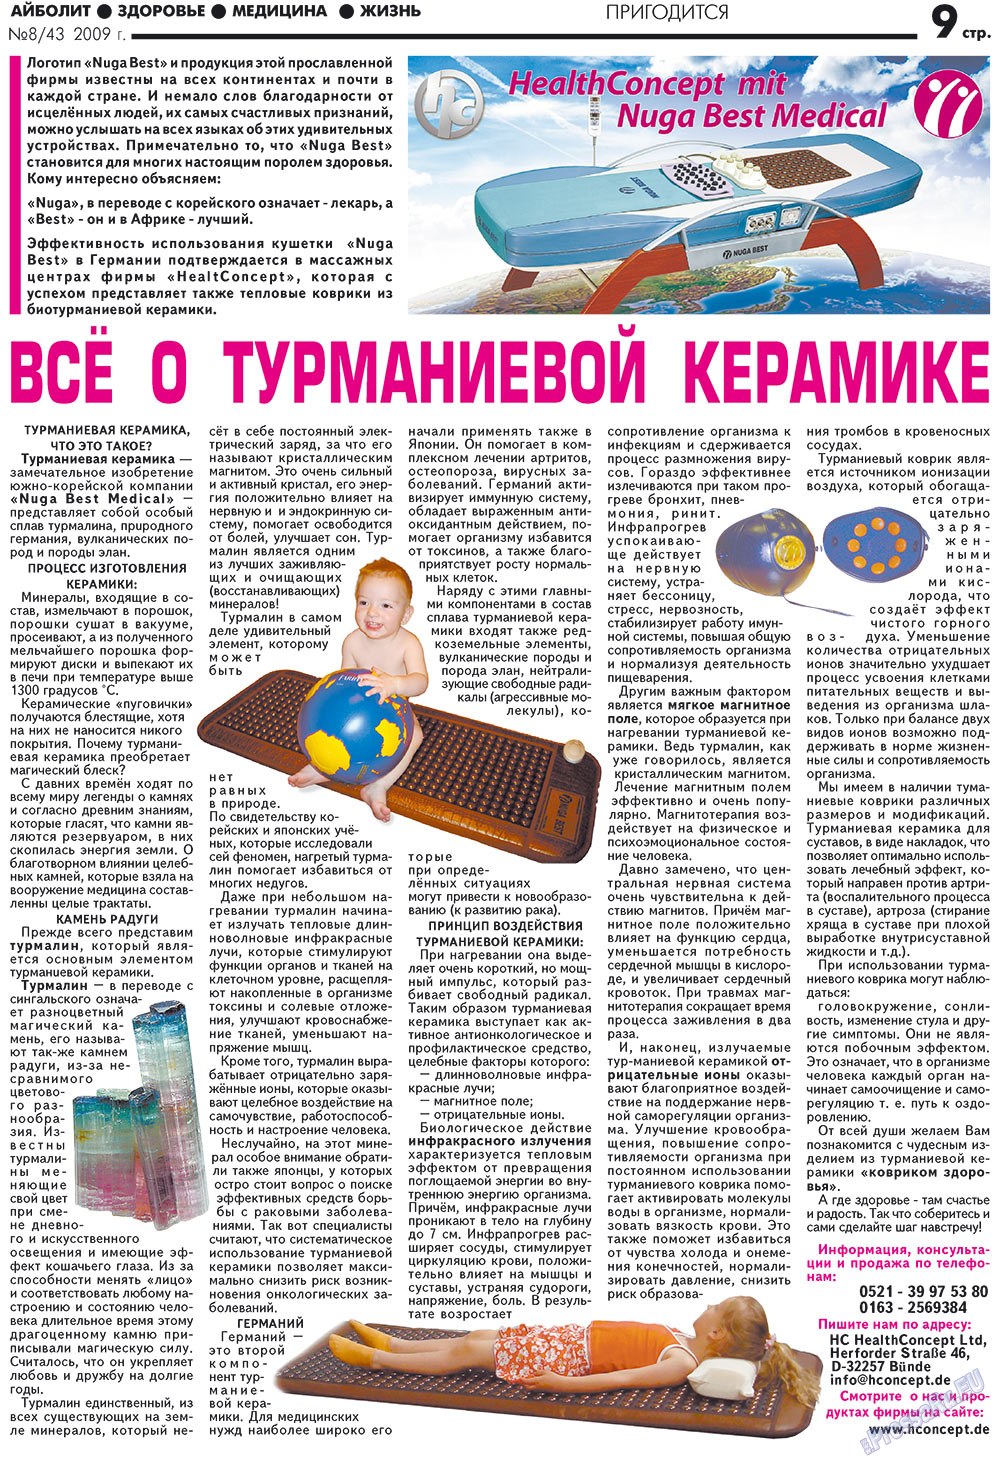 АйБолит, газета. 2009 №8 стр.9